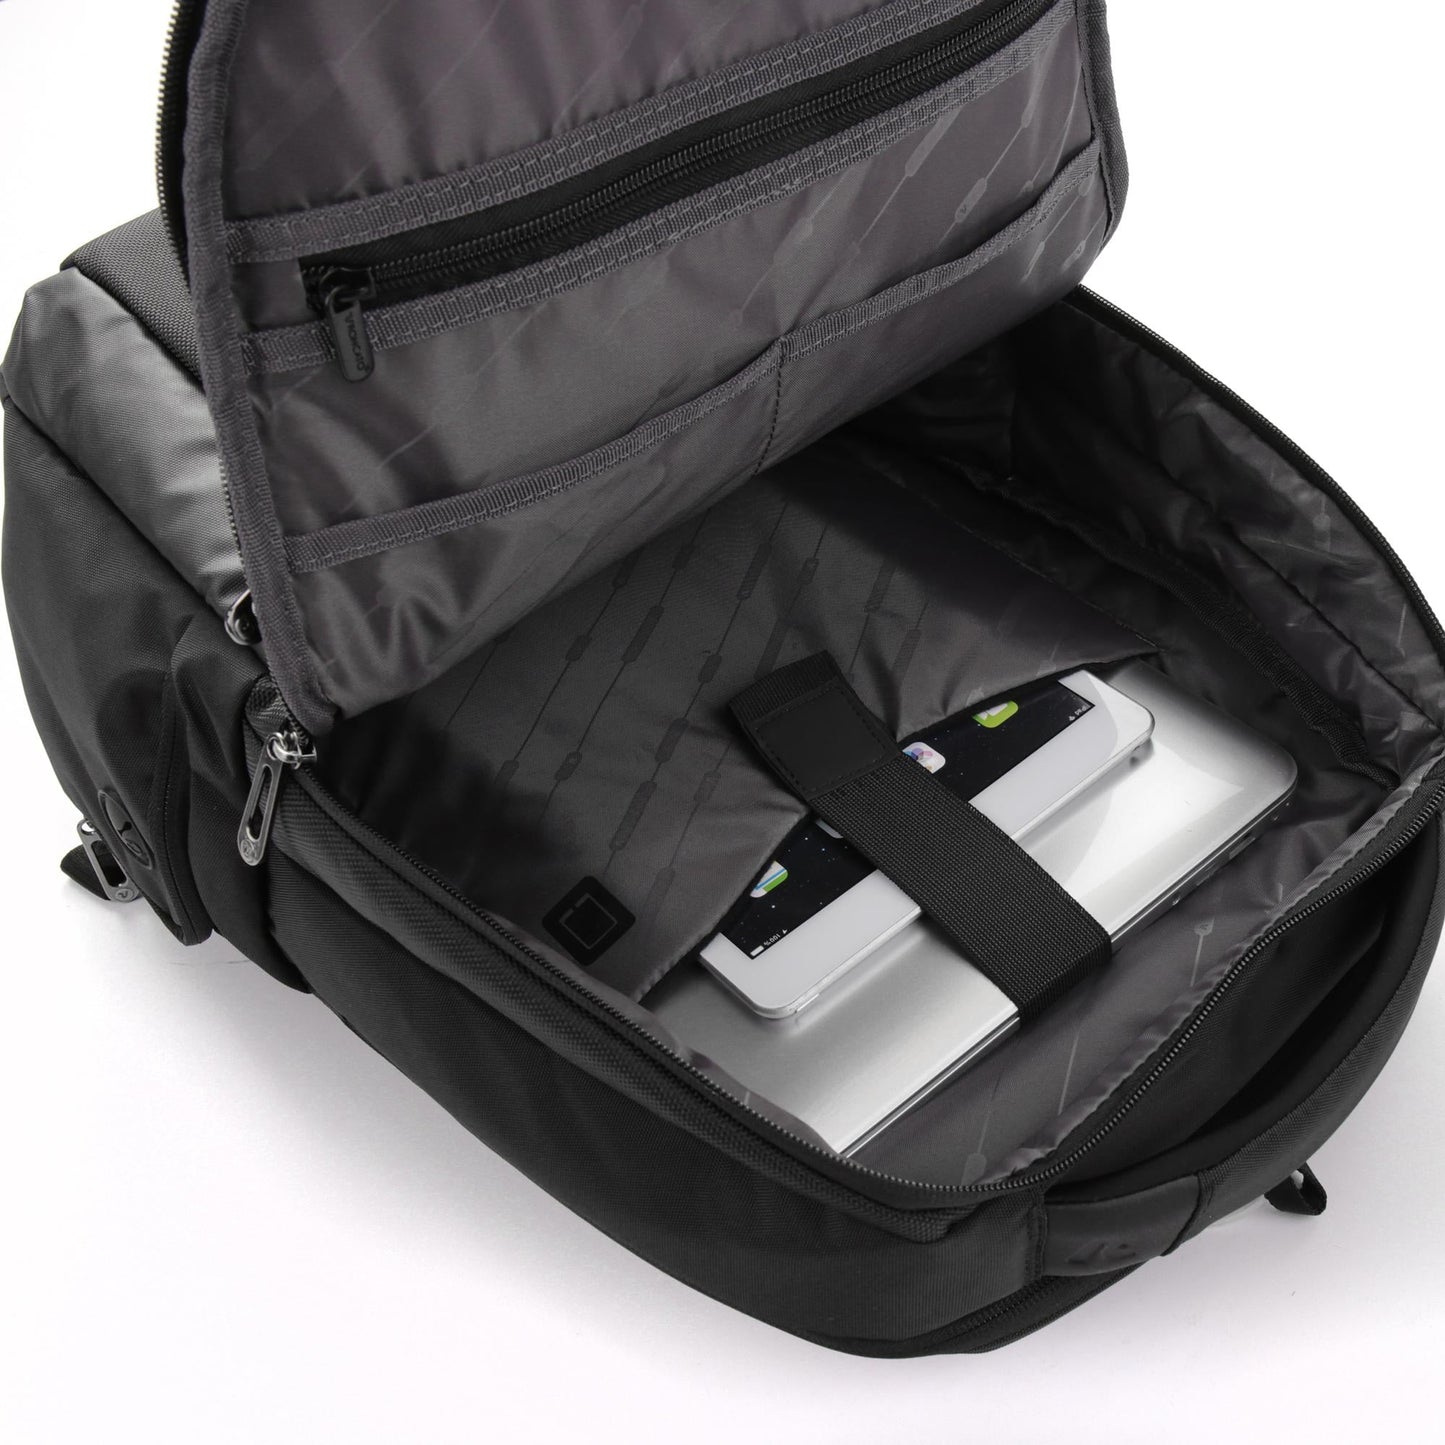 Zaino Roncato Desk - Porta PC 15,6" e Tablet 10" 417181